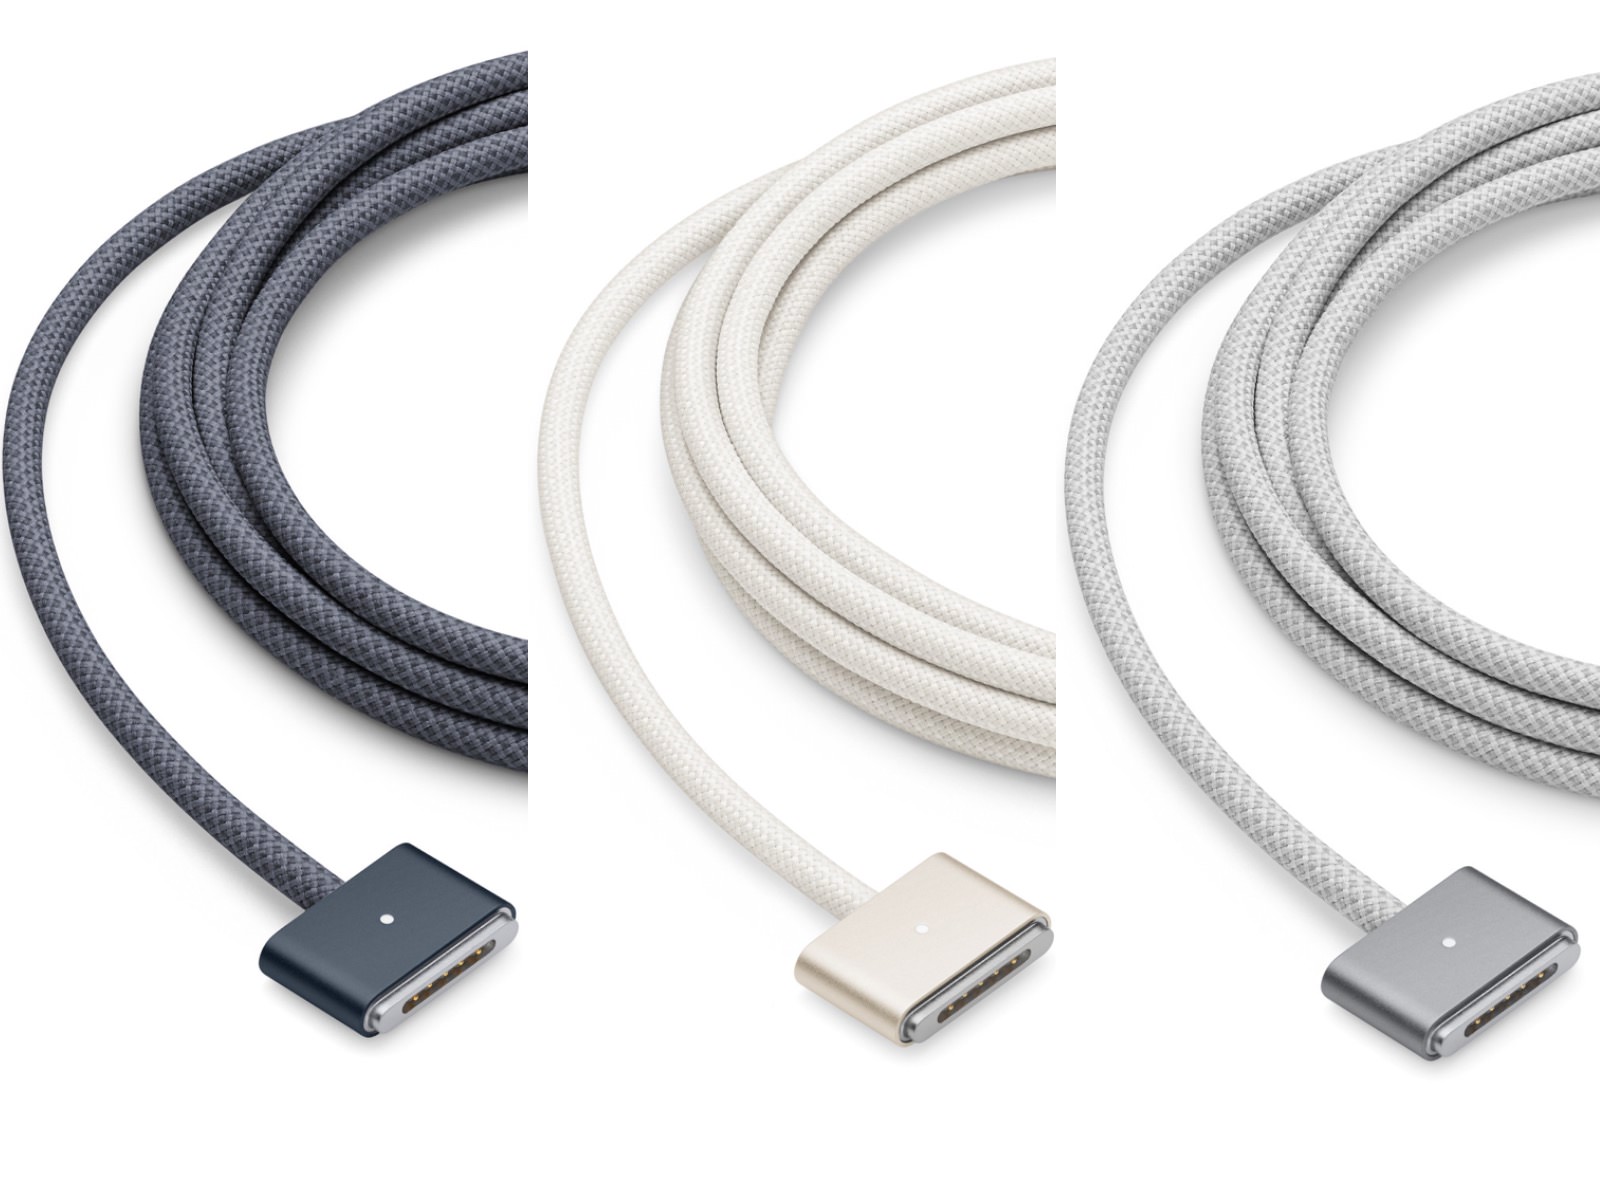 M2 MacBook Airのカラーに合わせたMagSafeケーブル、USB-C端子の違和感 